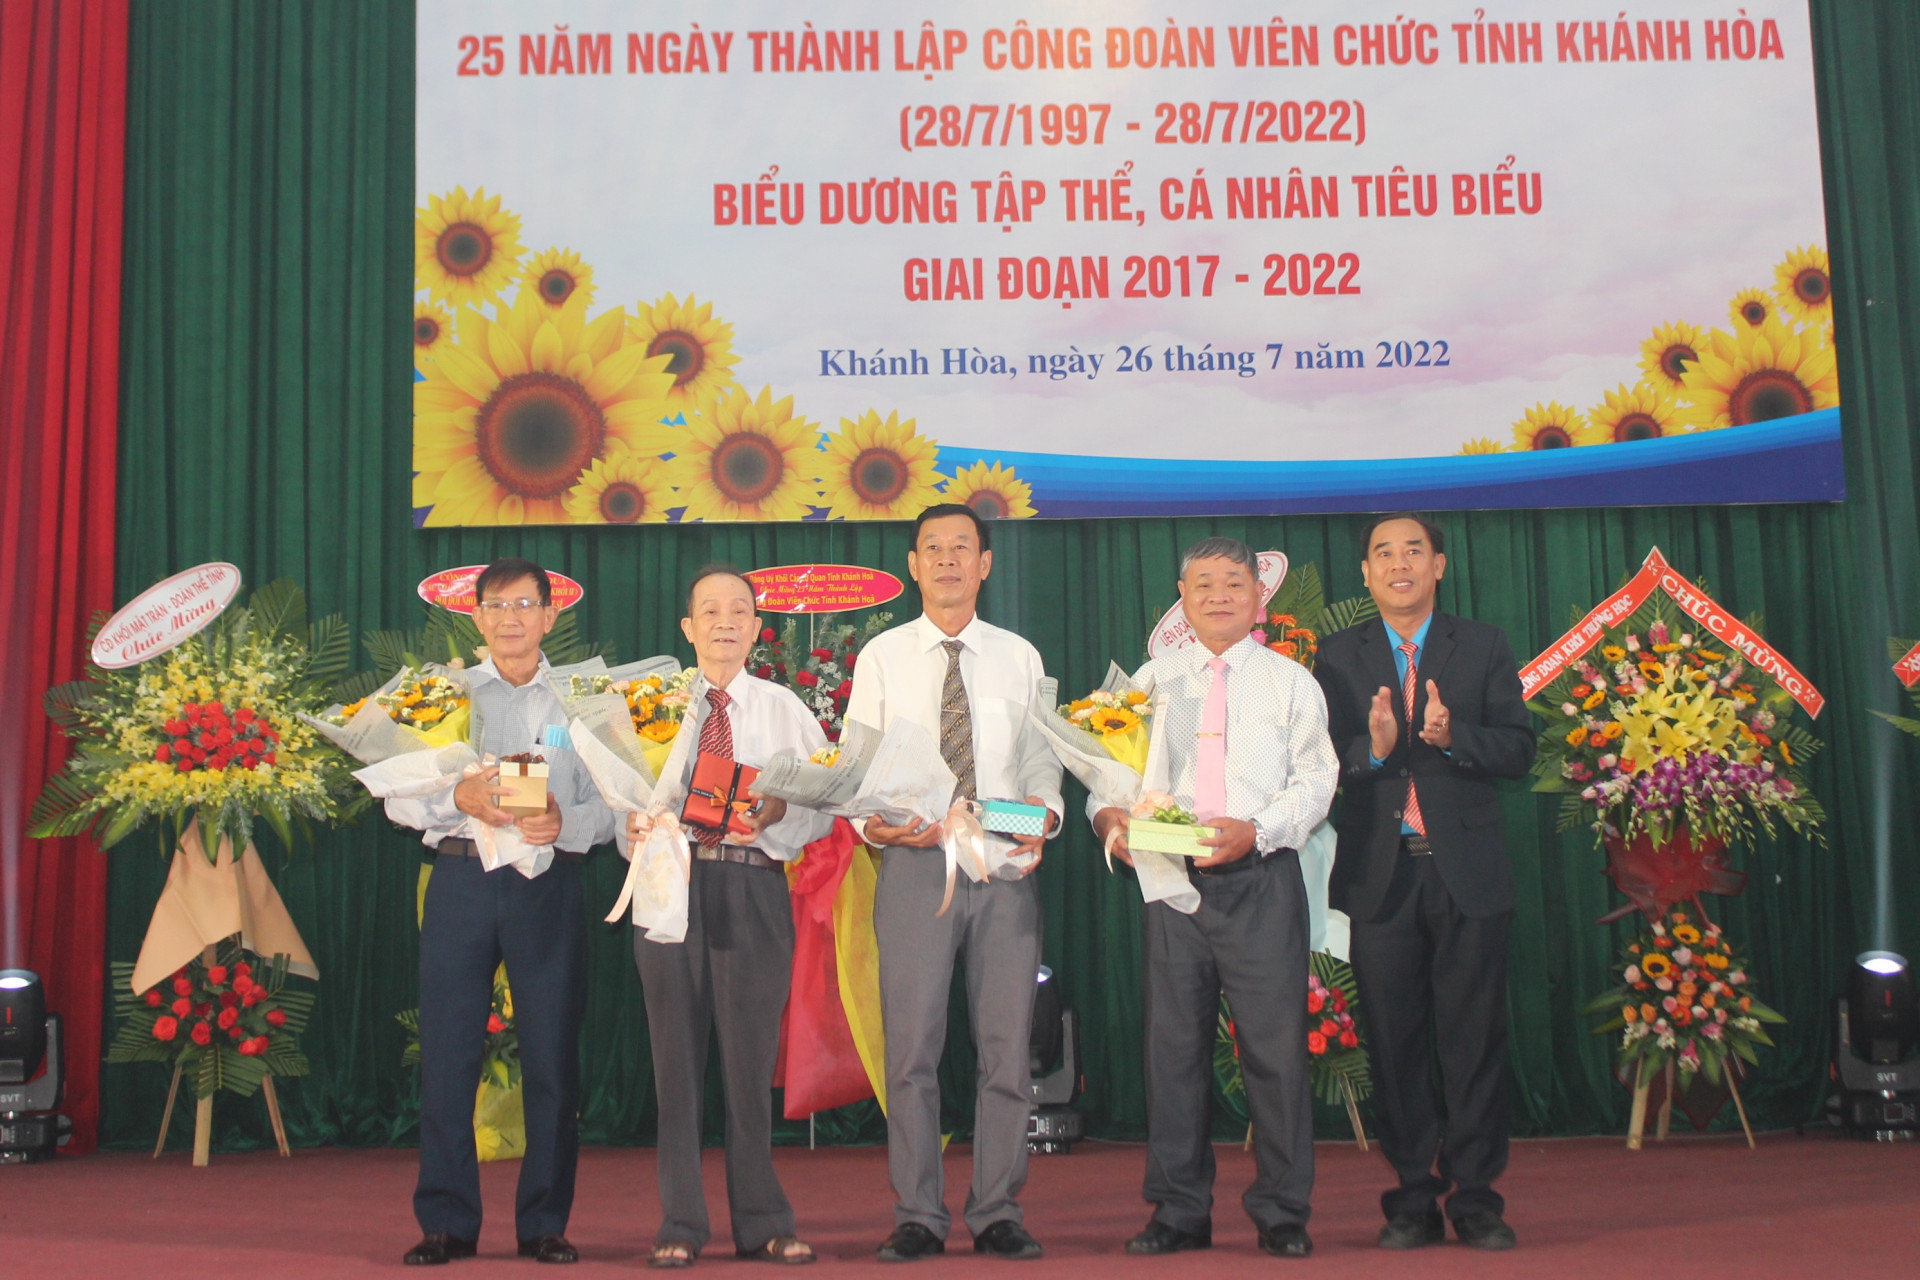 Ông Nguyễn Thanh Phong - Chủ tịch Công đoàn Viên chức tỉnh tặng hoa tri ân đóng góp của các cự cán bộ Công đoàn Viên chức tỉnh qua các thời kỳ